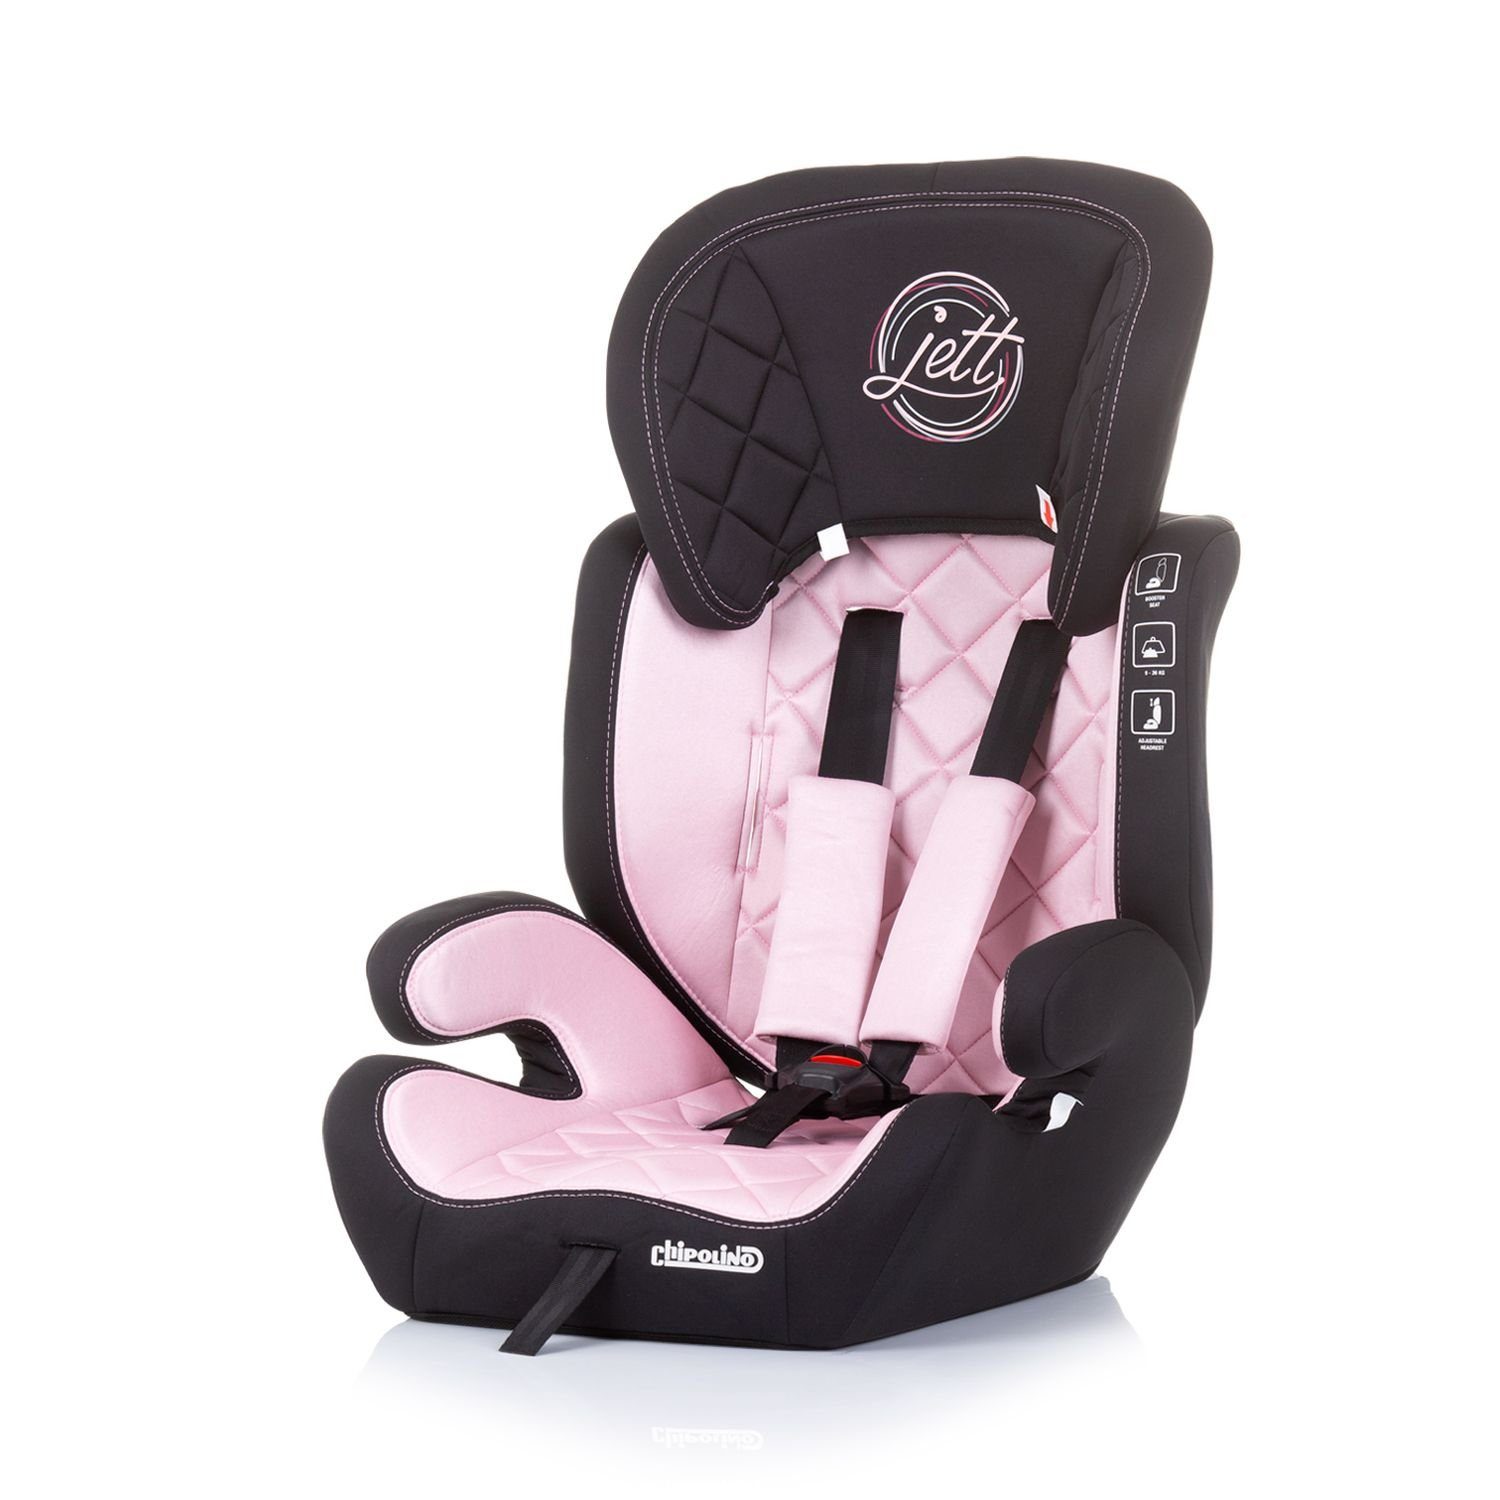 - bis: Jett Kopfstütze 36 Chipolino Kindersitz (9 kg), Autokindersitz rosa Gruppe 36 Baby verstellbare kg, 1/2/3,